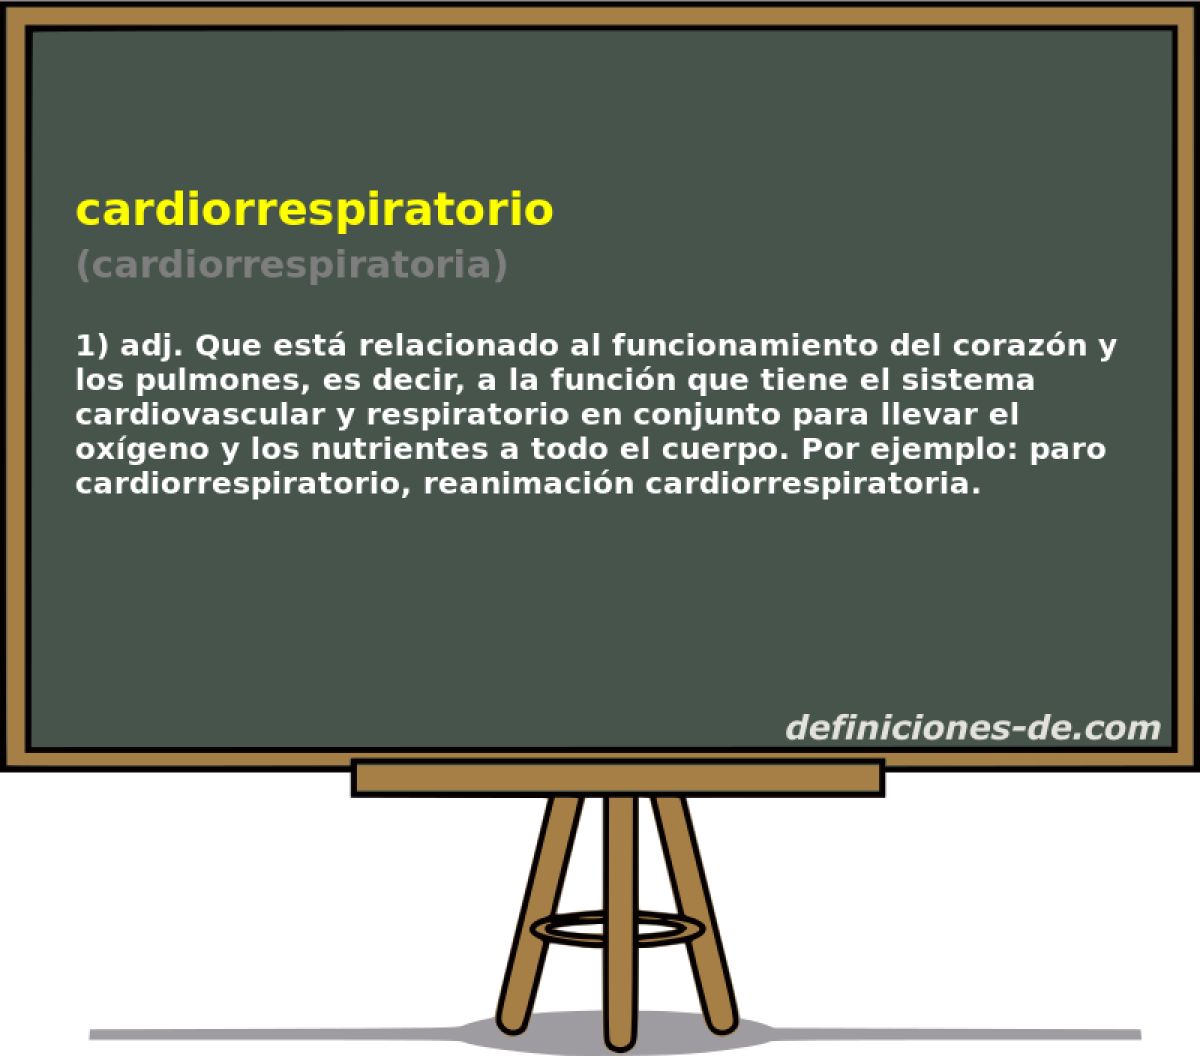 cardiorrespiratorio (cardiorrespiratoria)